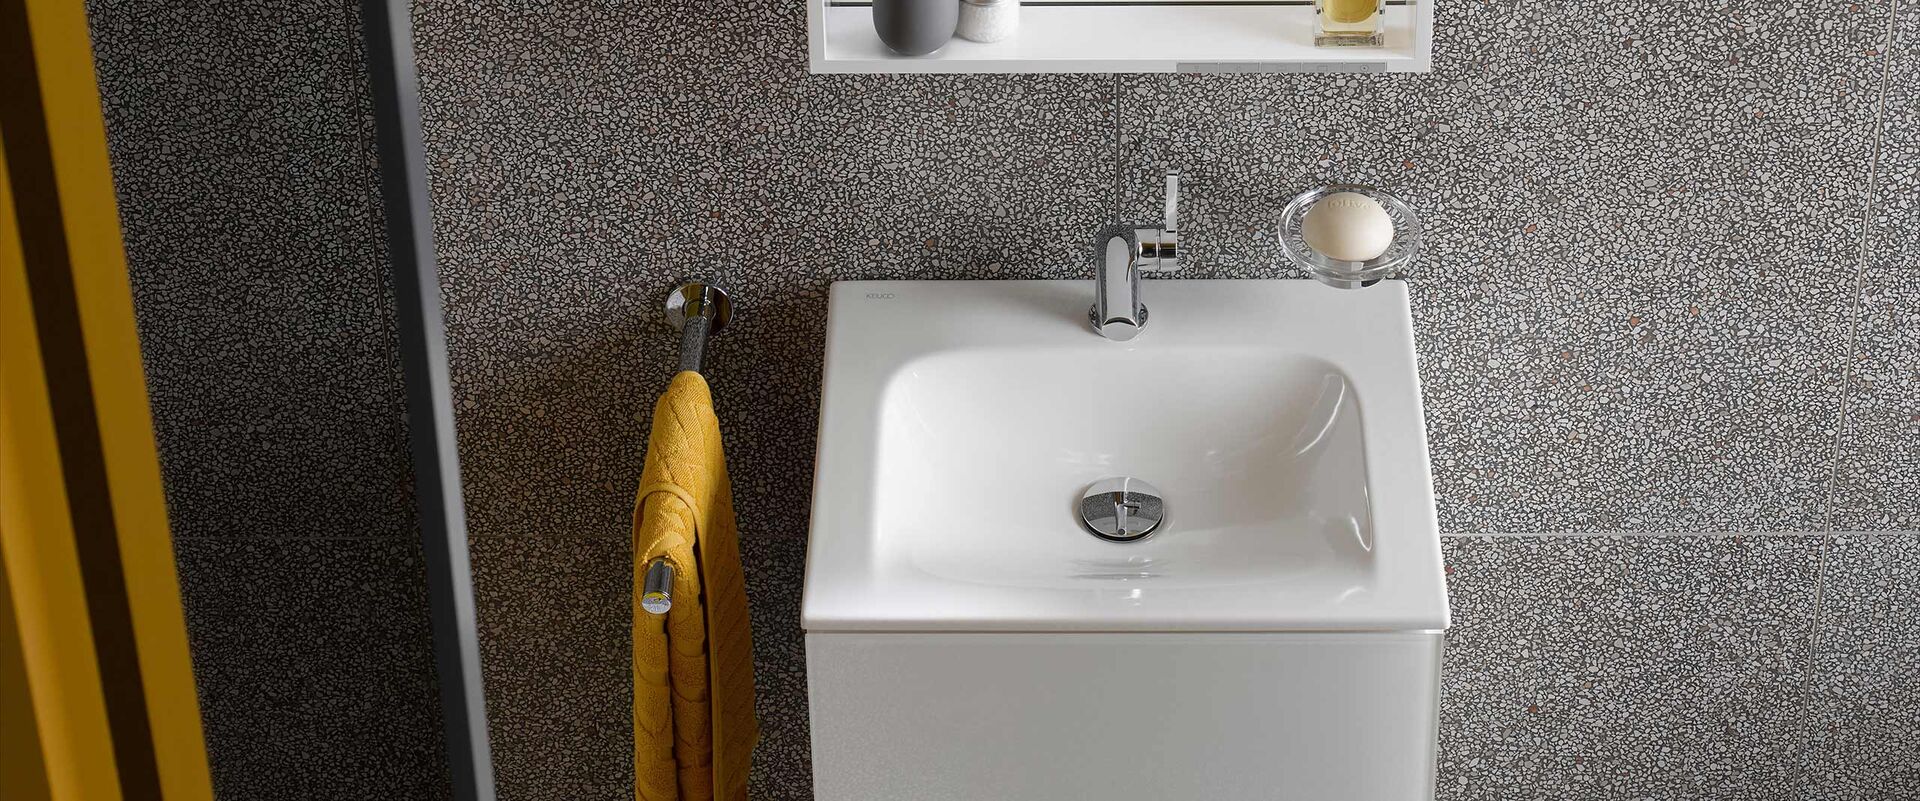 Kleines Waschbecken X-Line von Keuco im Detail: Das kompakte Maß ist ideal für Gäste-Bäder und -WCs.